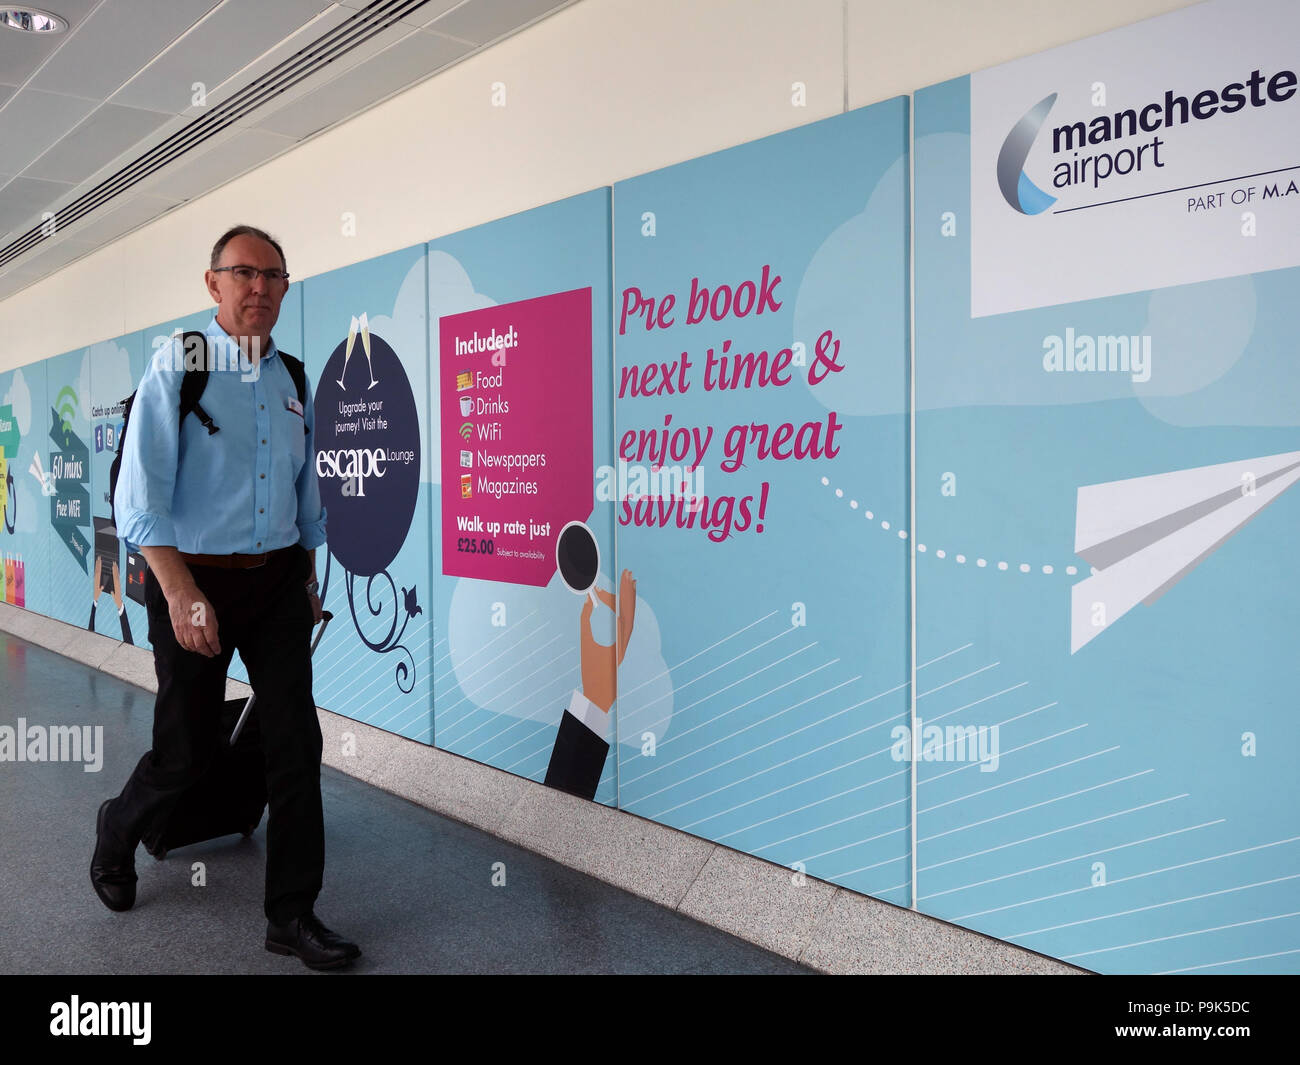 Passagiere vorbei gehen. Die Werbung auf Wände ihren Weg mit Ihrer Flüge am  Flughafen Manchester Klemme 3 verbinden Stockfotografie - Alamy